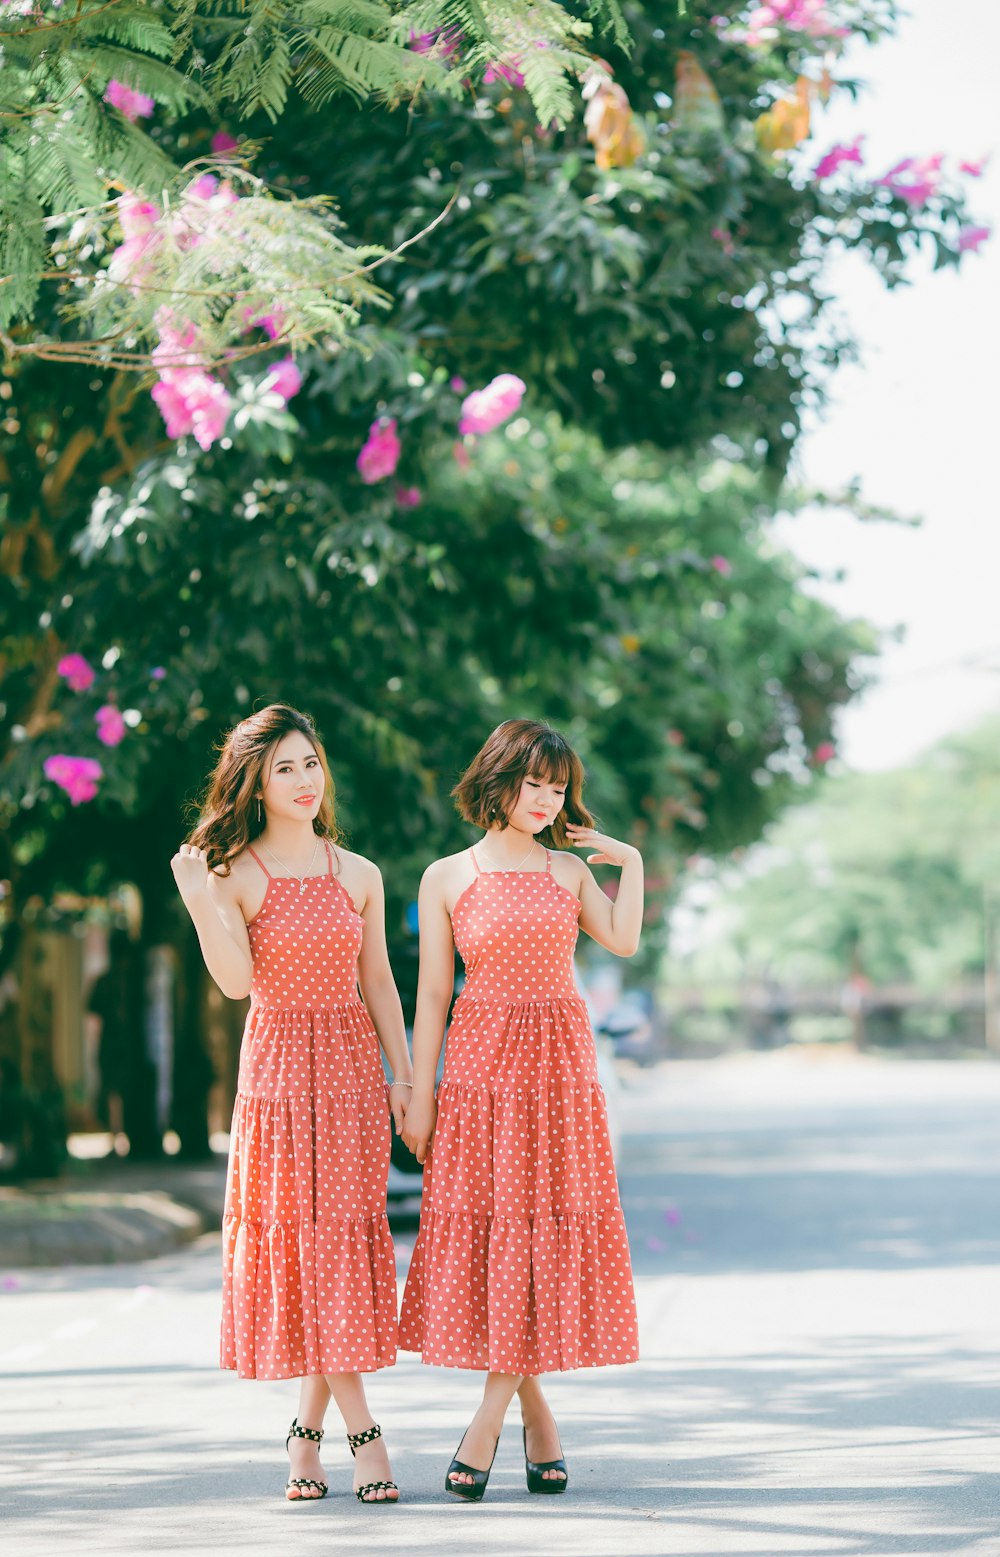 Deux femmes portant des robes à pois rouges et blancs se tiennent sur la route près de fleurs aux pétales roses pendant la journée